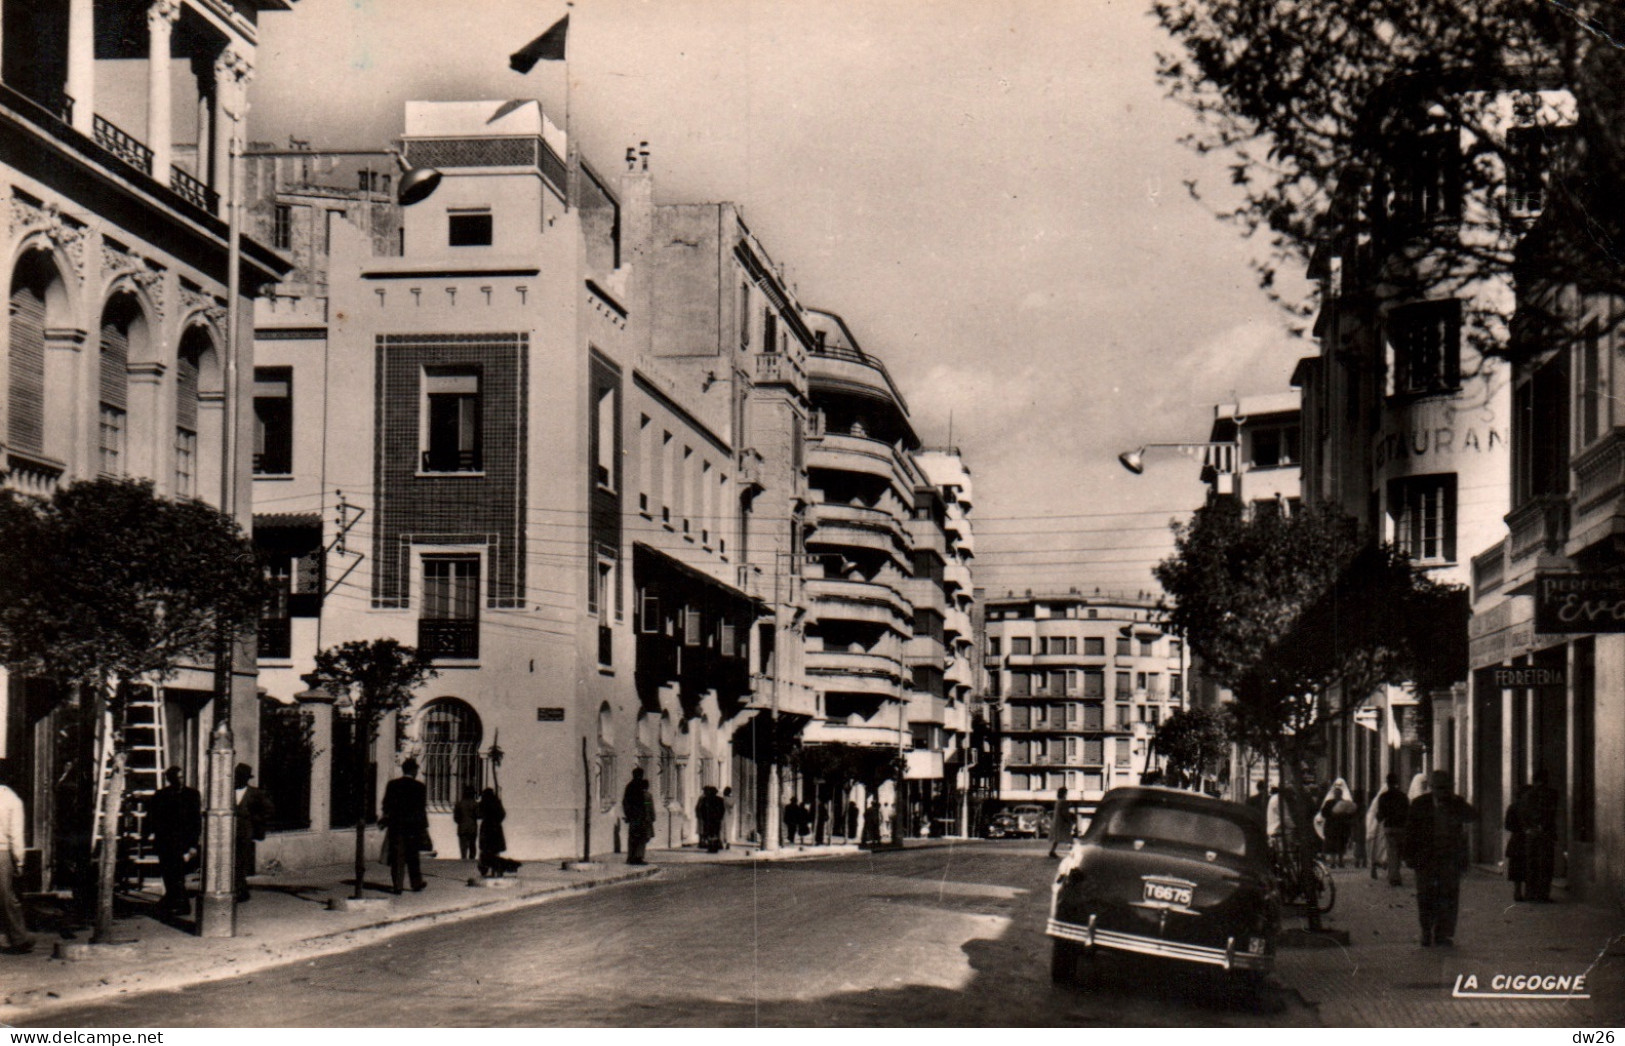 Tanger - Le Boulevard Pasteur, Administration De La Zone Internationale - Carte La Cigogne N° 99.325.48 - Tanger